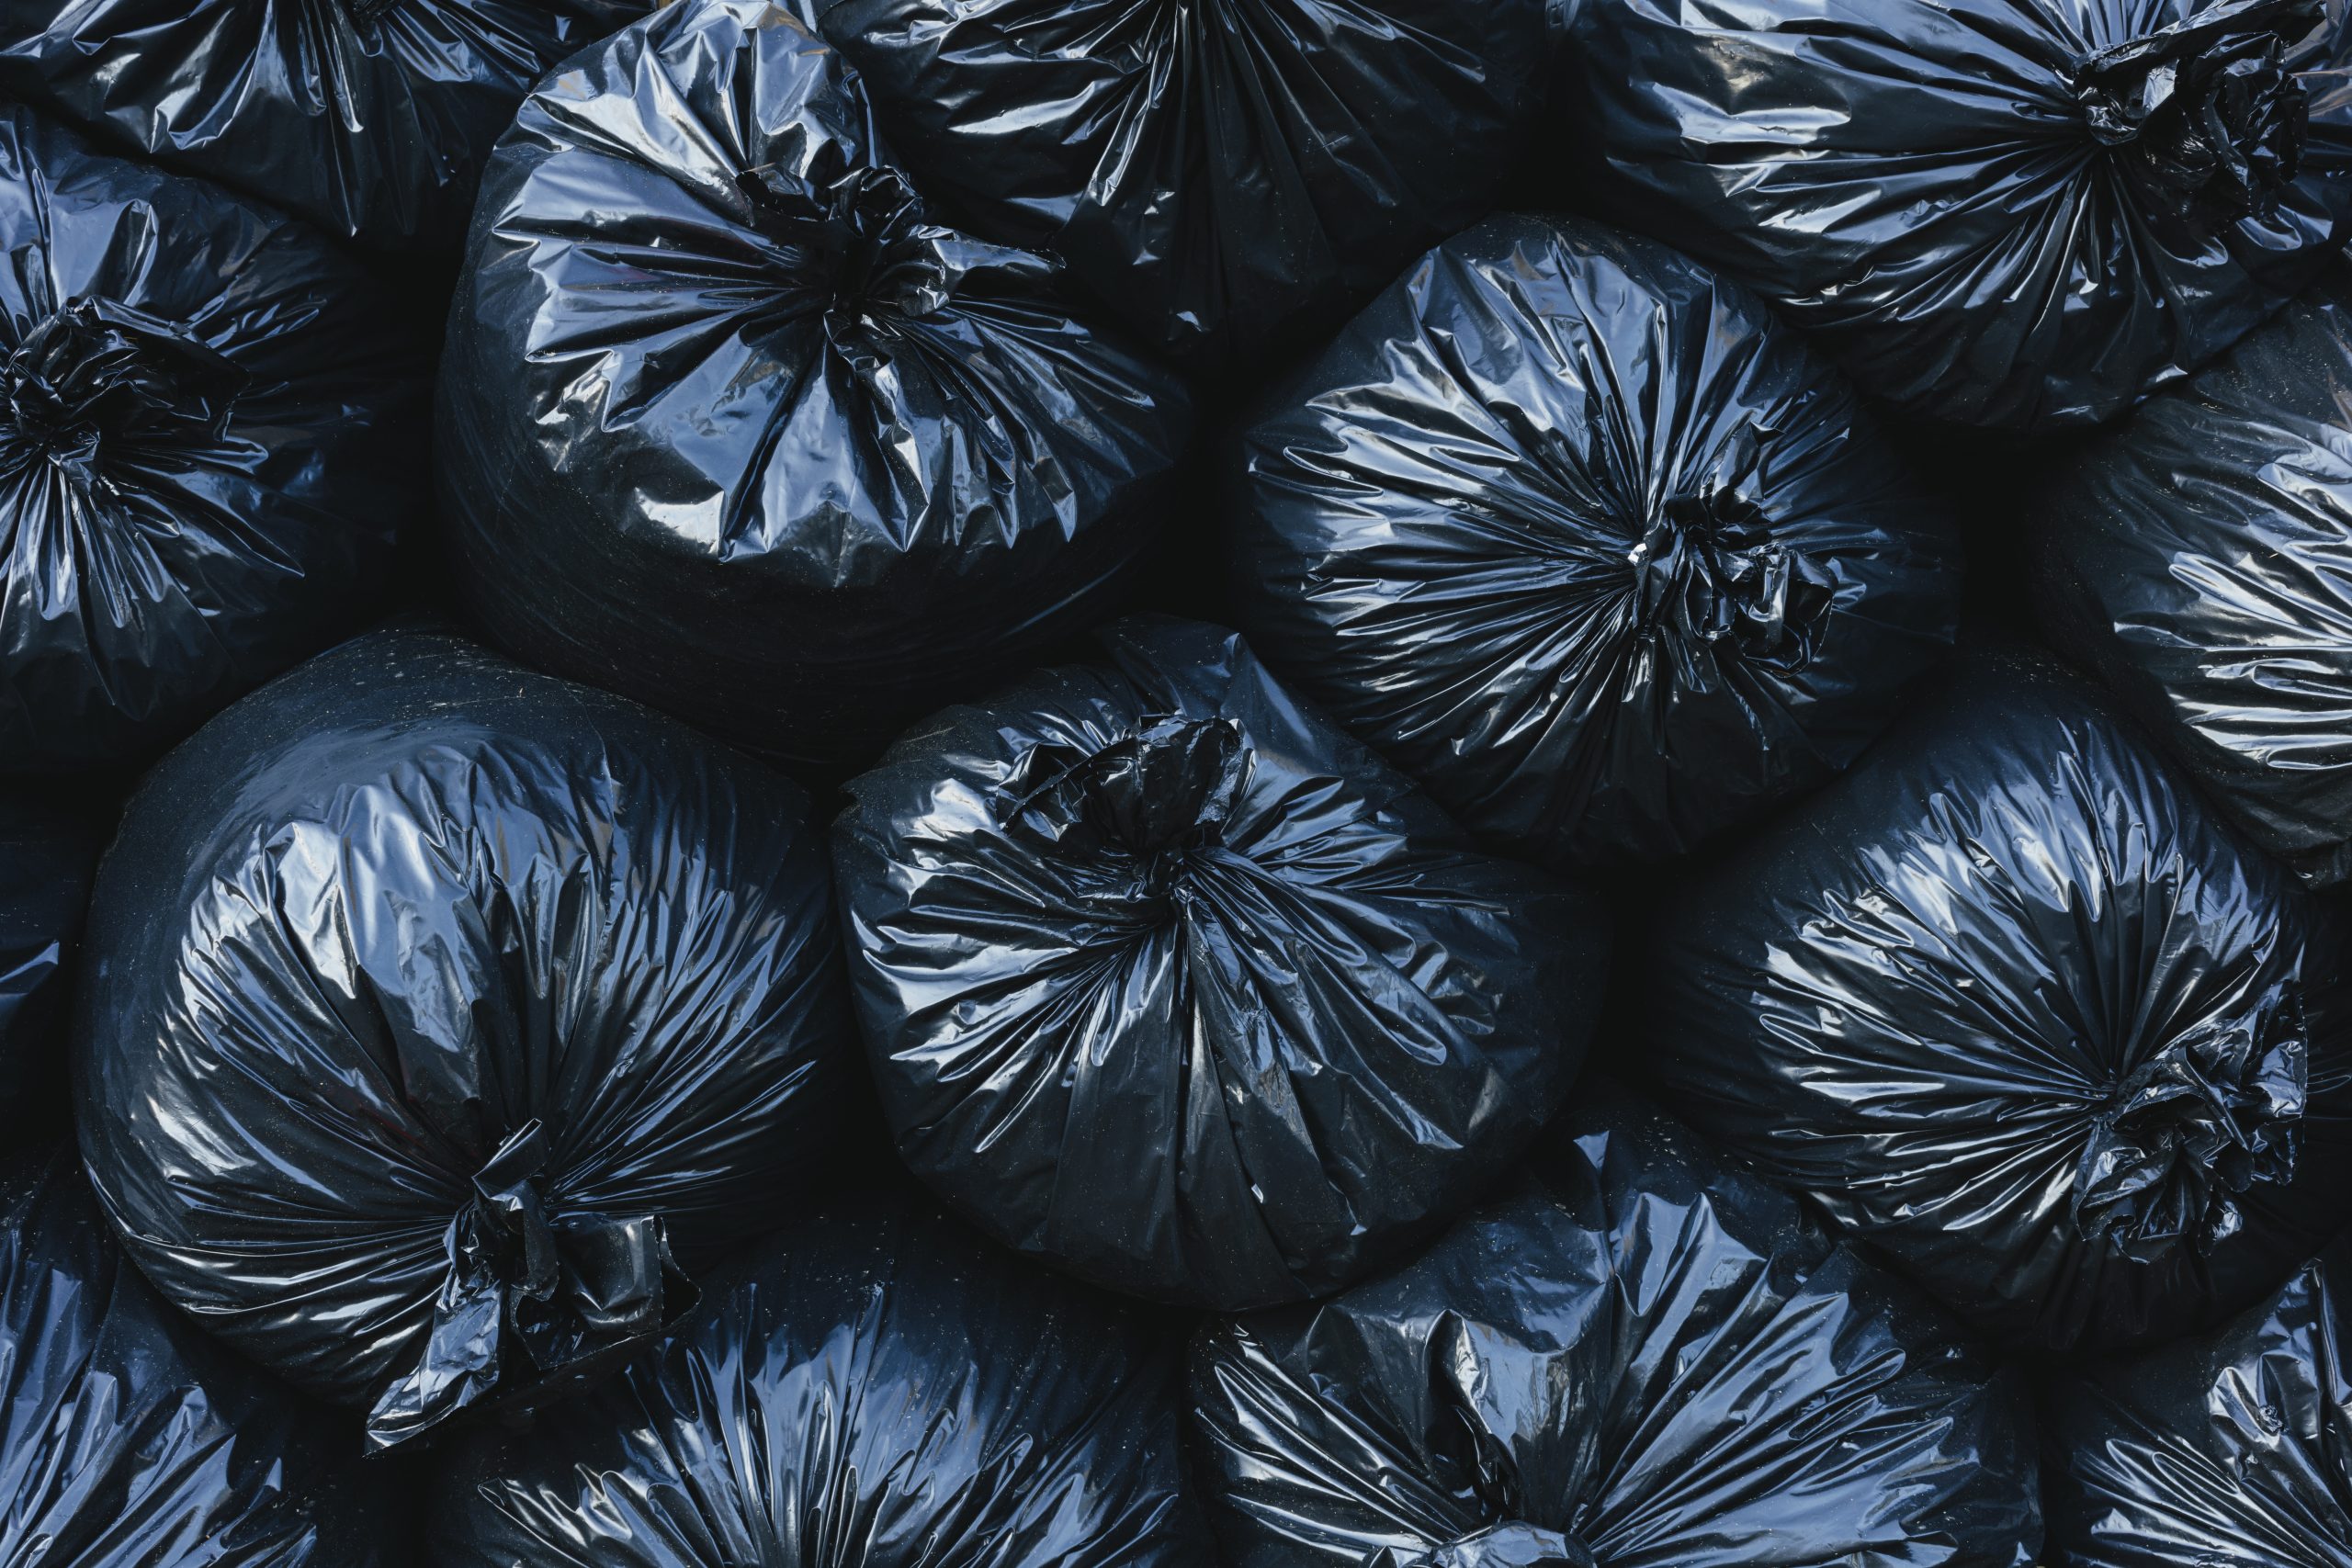 Pile of black plastic garbage bags. ,Pile of black plastic garbage bags